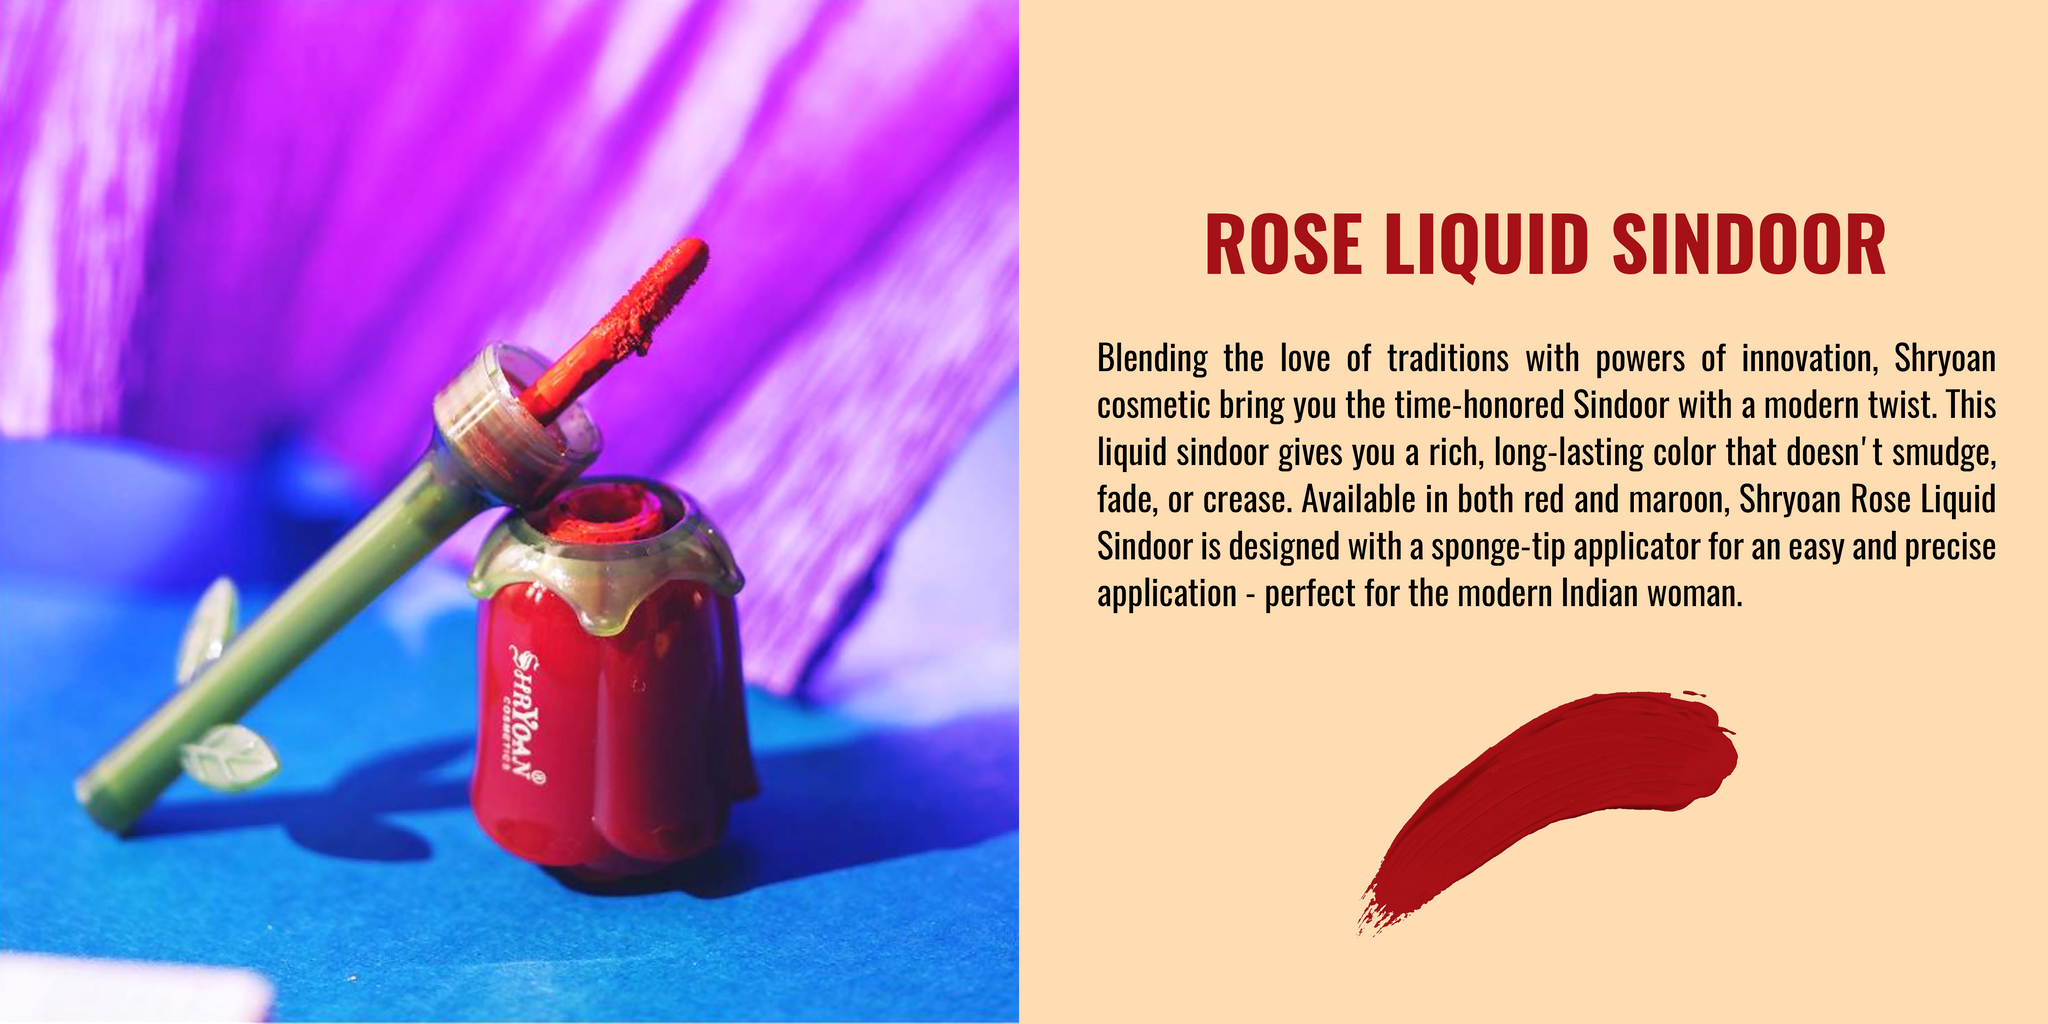 Rose Liquid Sindoor